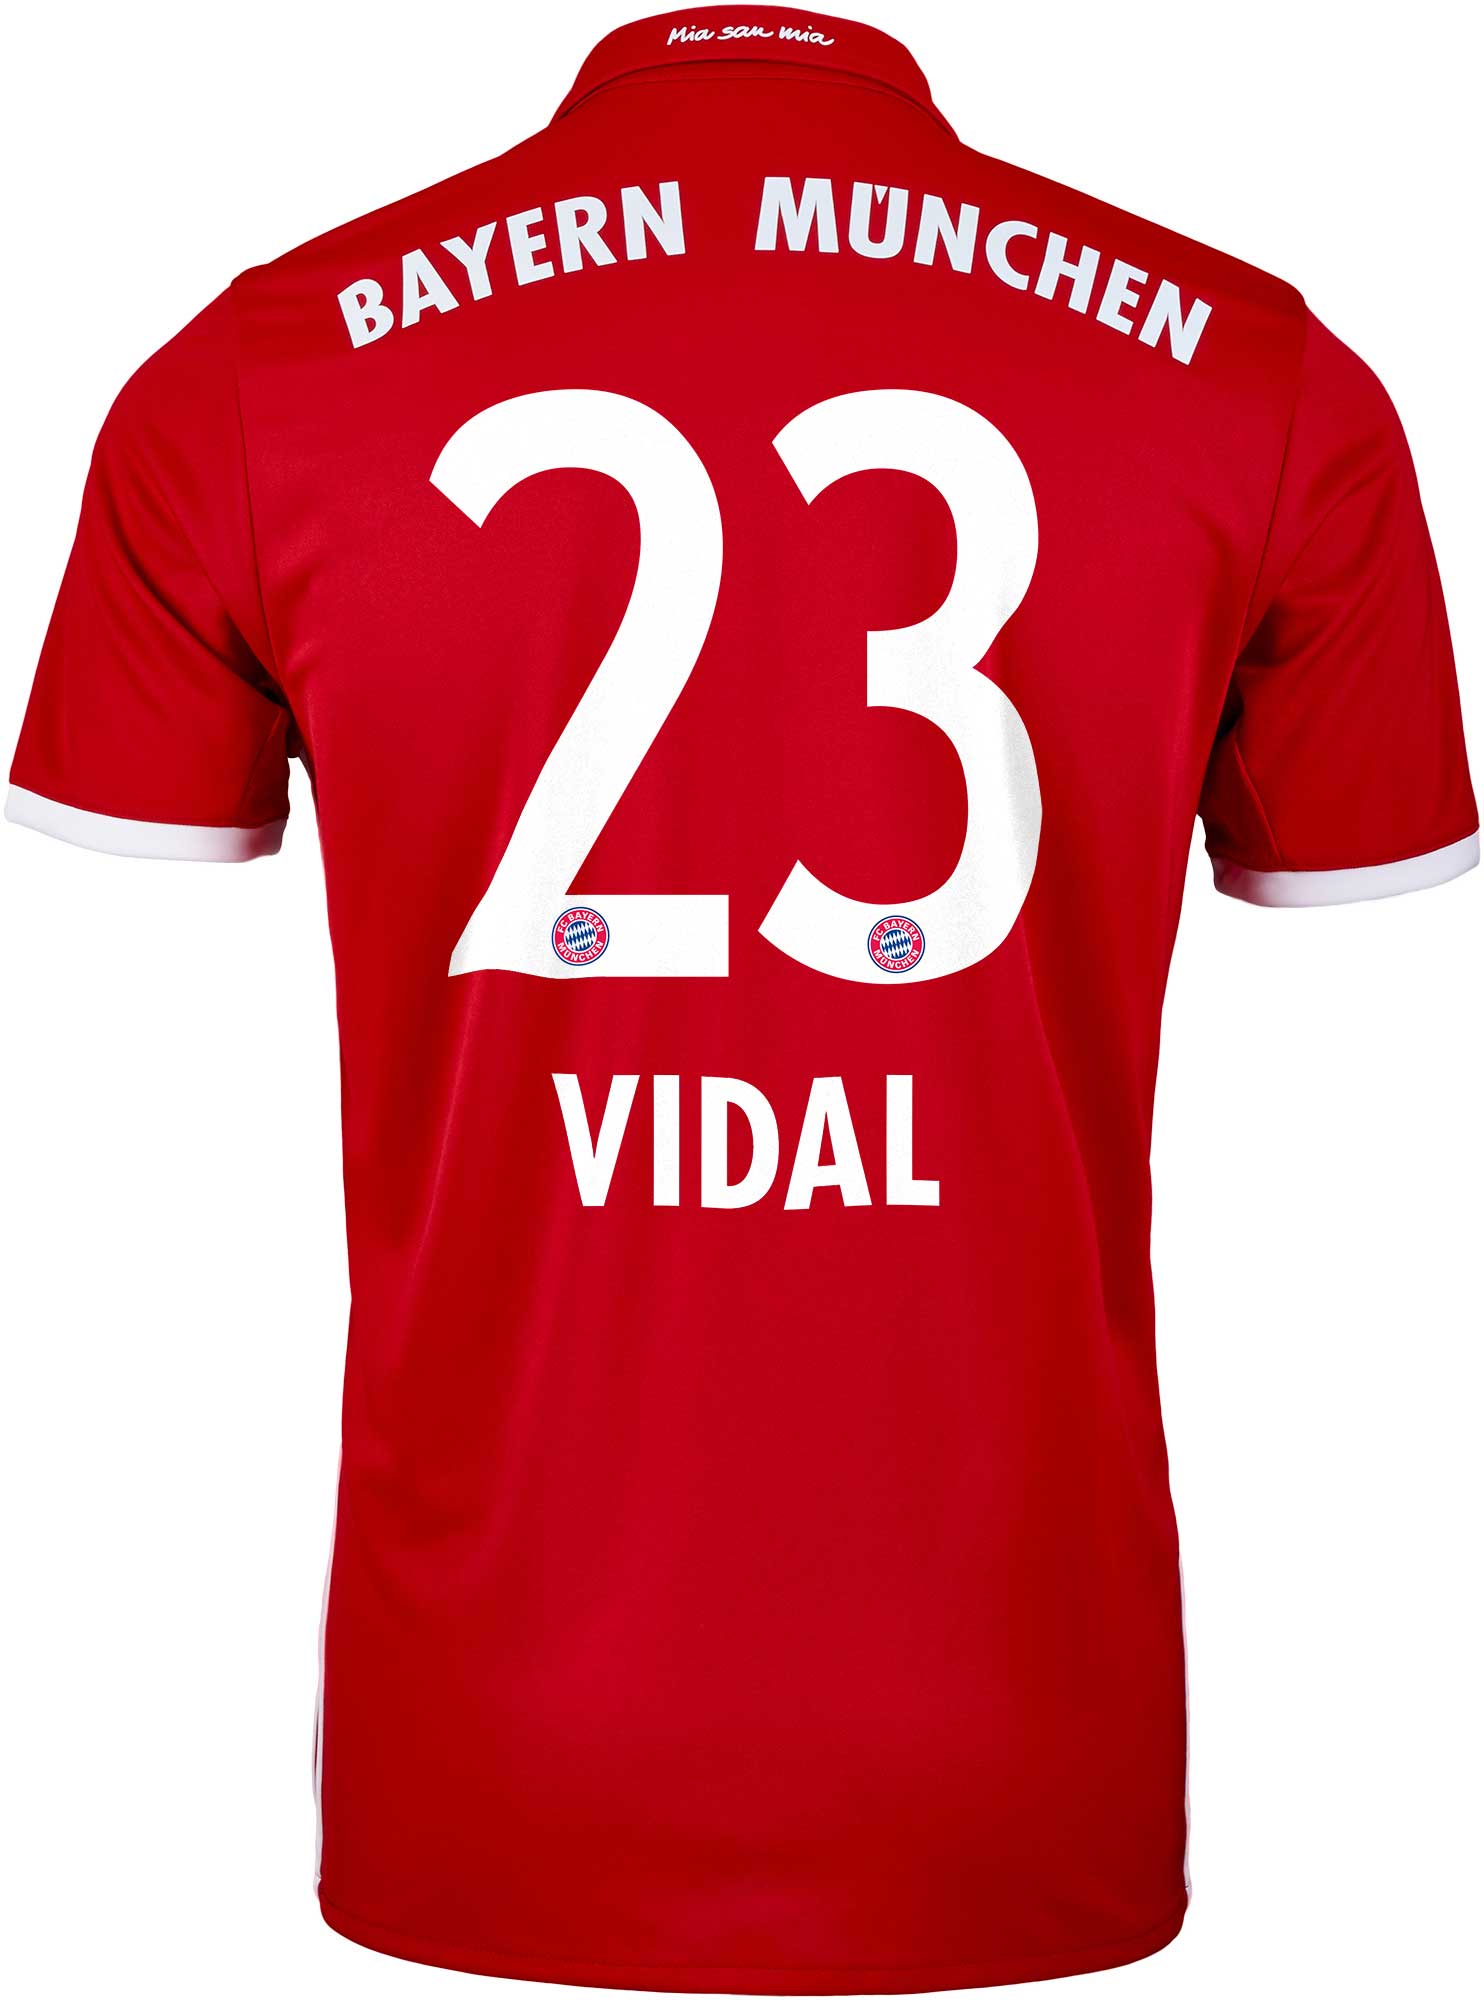 adidas Vidal Bayern Munich Jersey Bayern Munich Jerseys